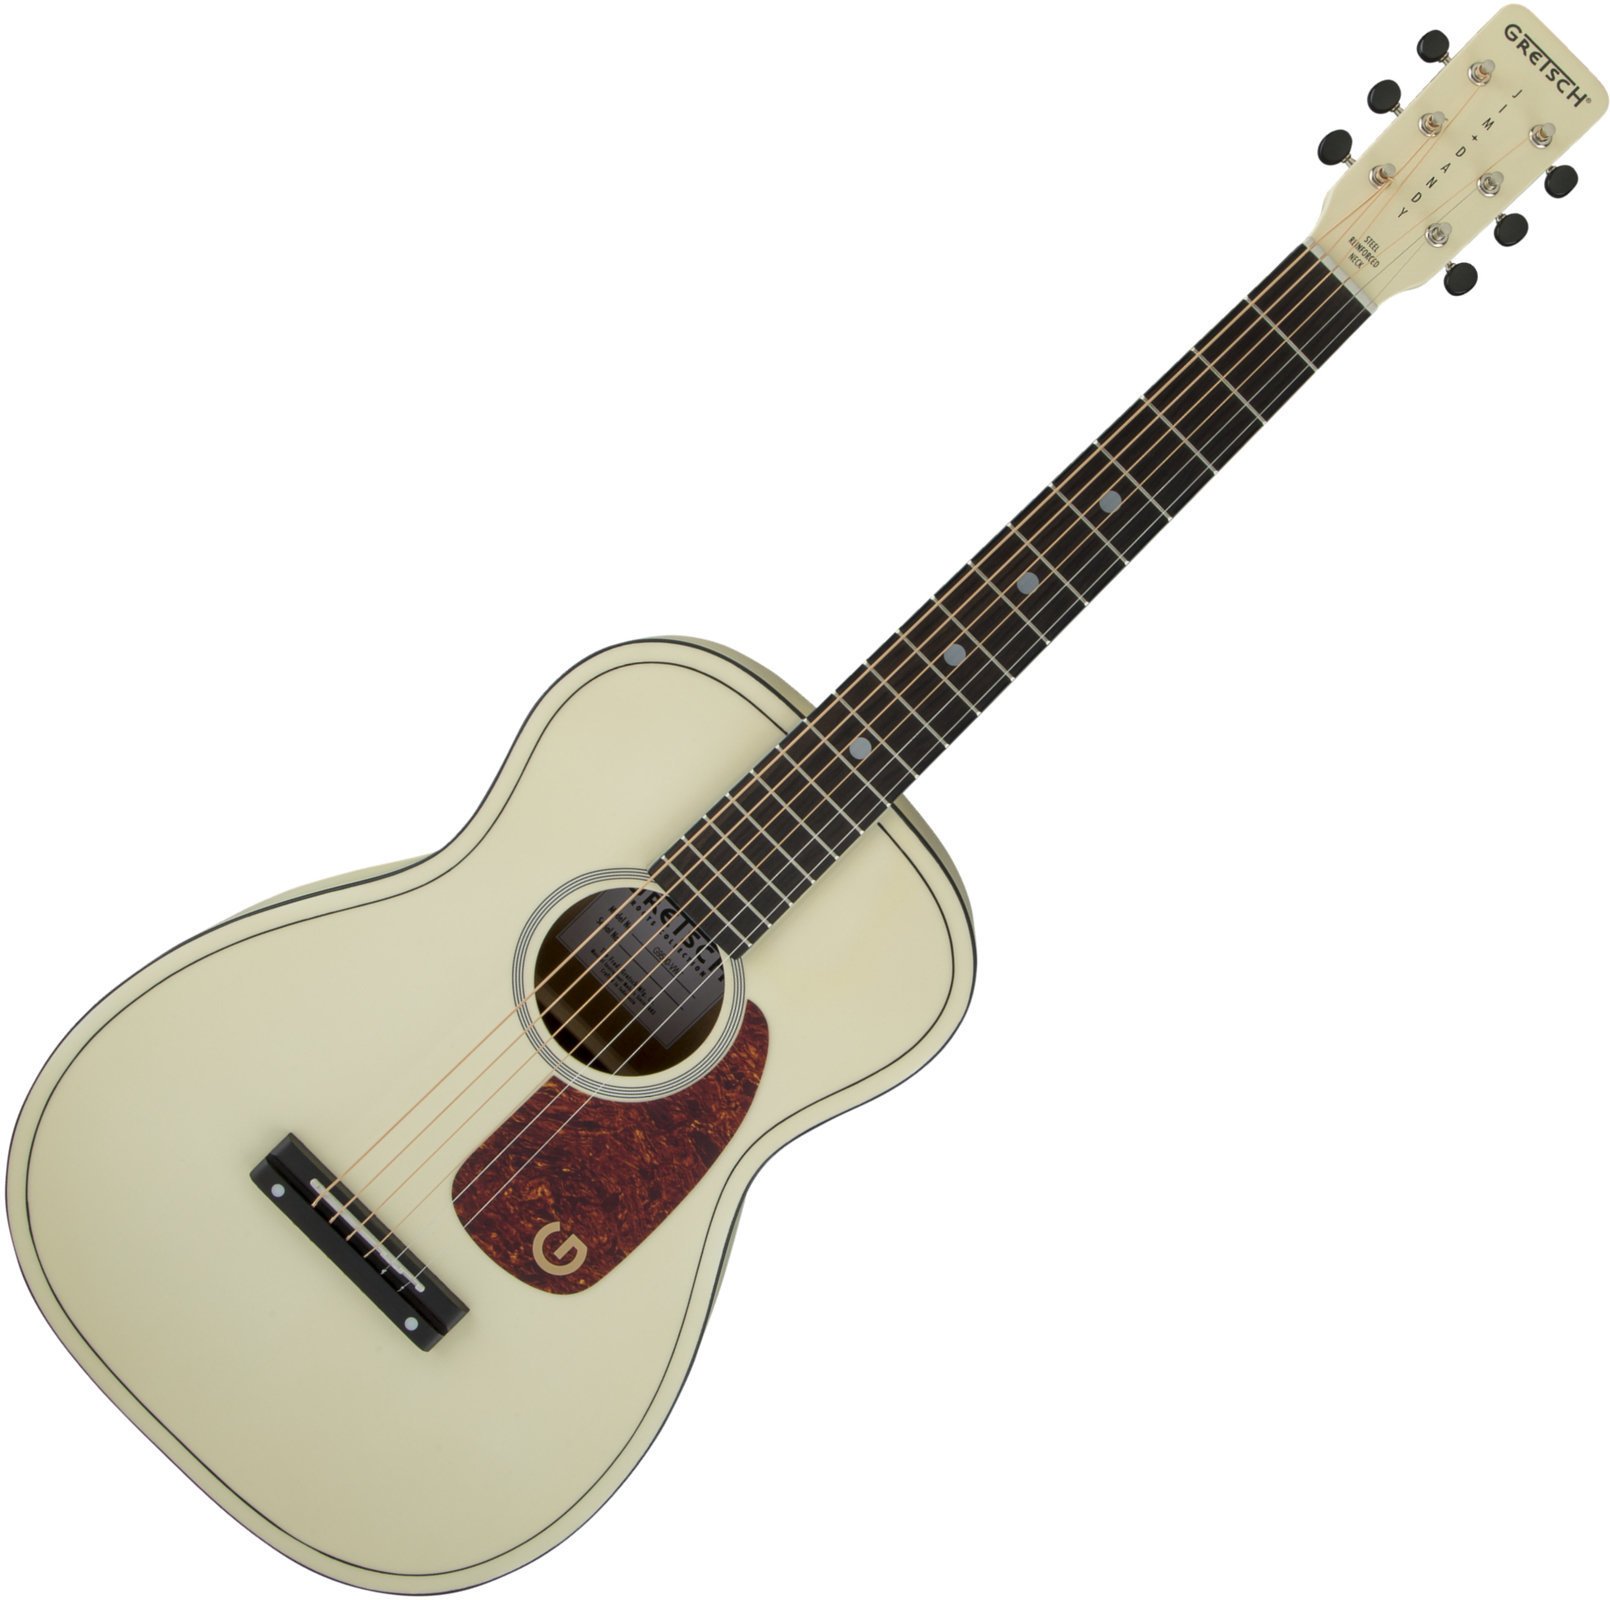 Akoestische gitaar Gretsch G9500 Jim Dandy Limited Edition Vintage White